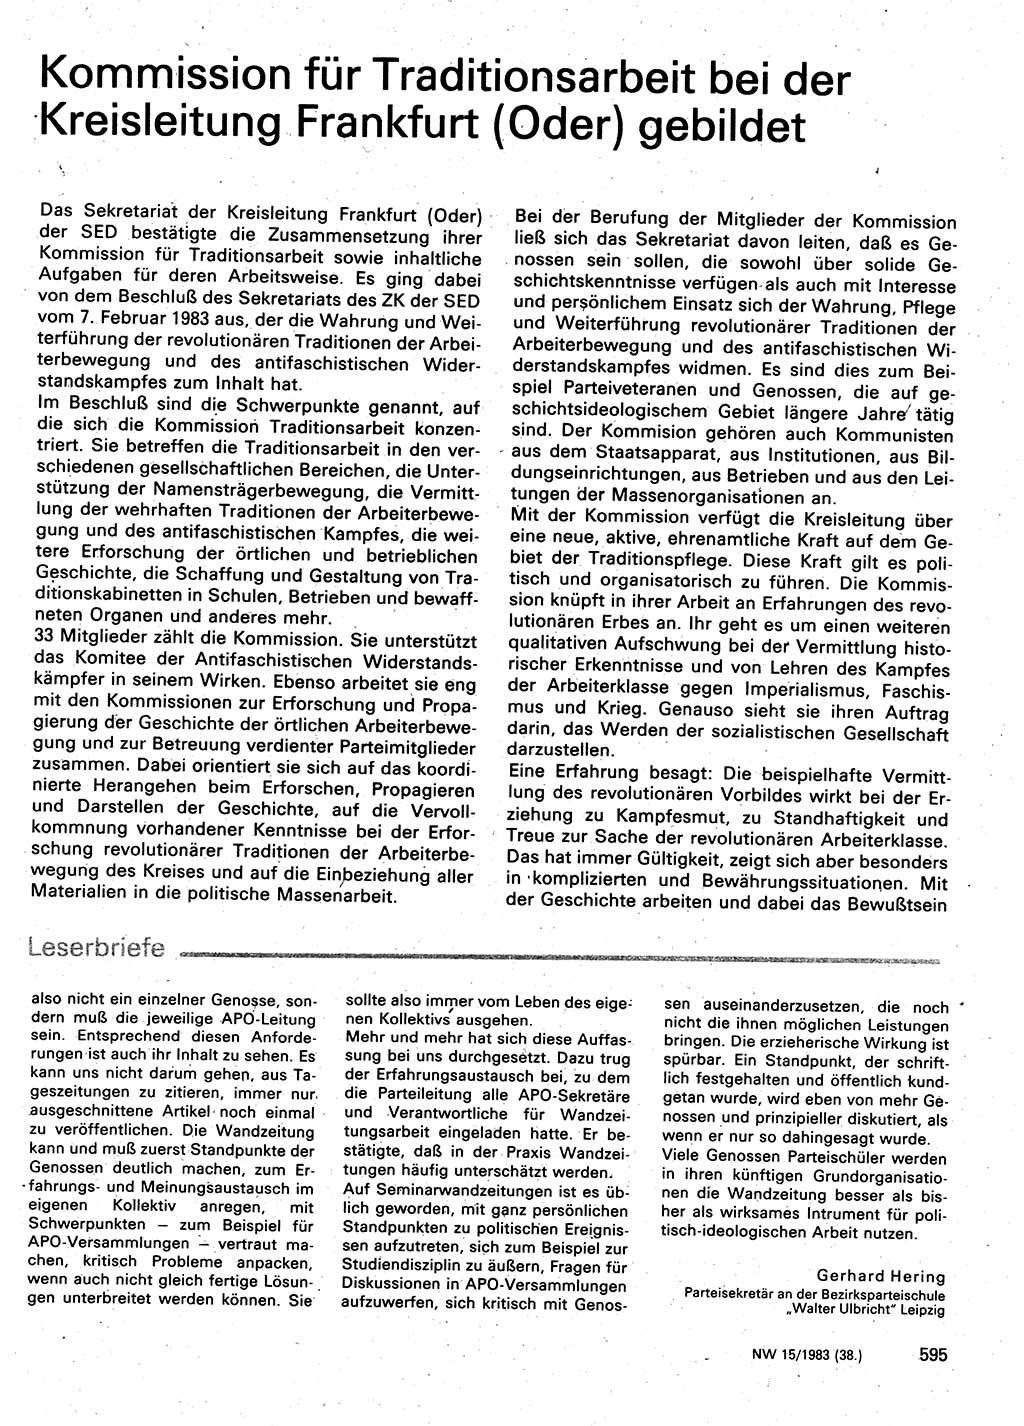 Neuer Weg (NW), Organ des Zentralkomitees (ZK) der SED (Sozialistische Einheitspartei Deutschlands) für Fragen des Parteilebens, 38. Jahrgang [Deutsche Demokratische Republik (DDR)] 1983, Seite 595 (NW ZK SED DDR 1983, S. 595)